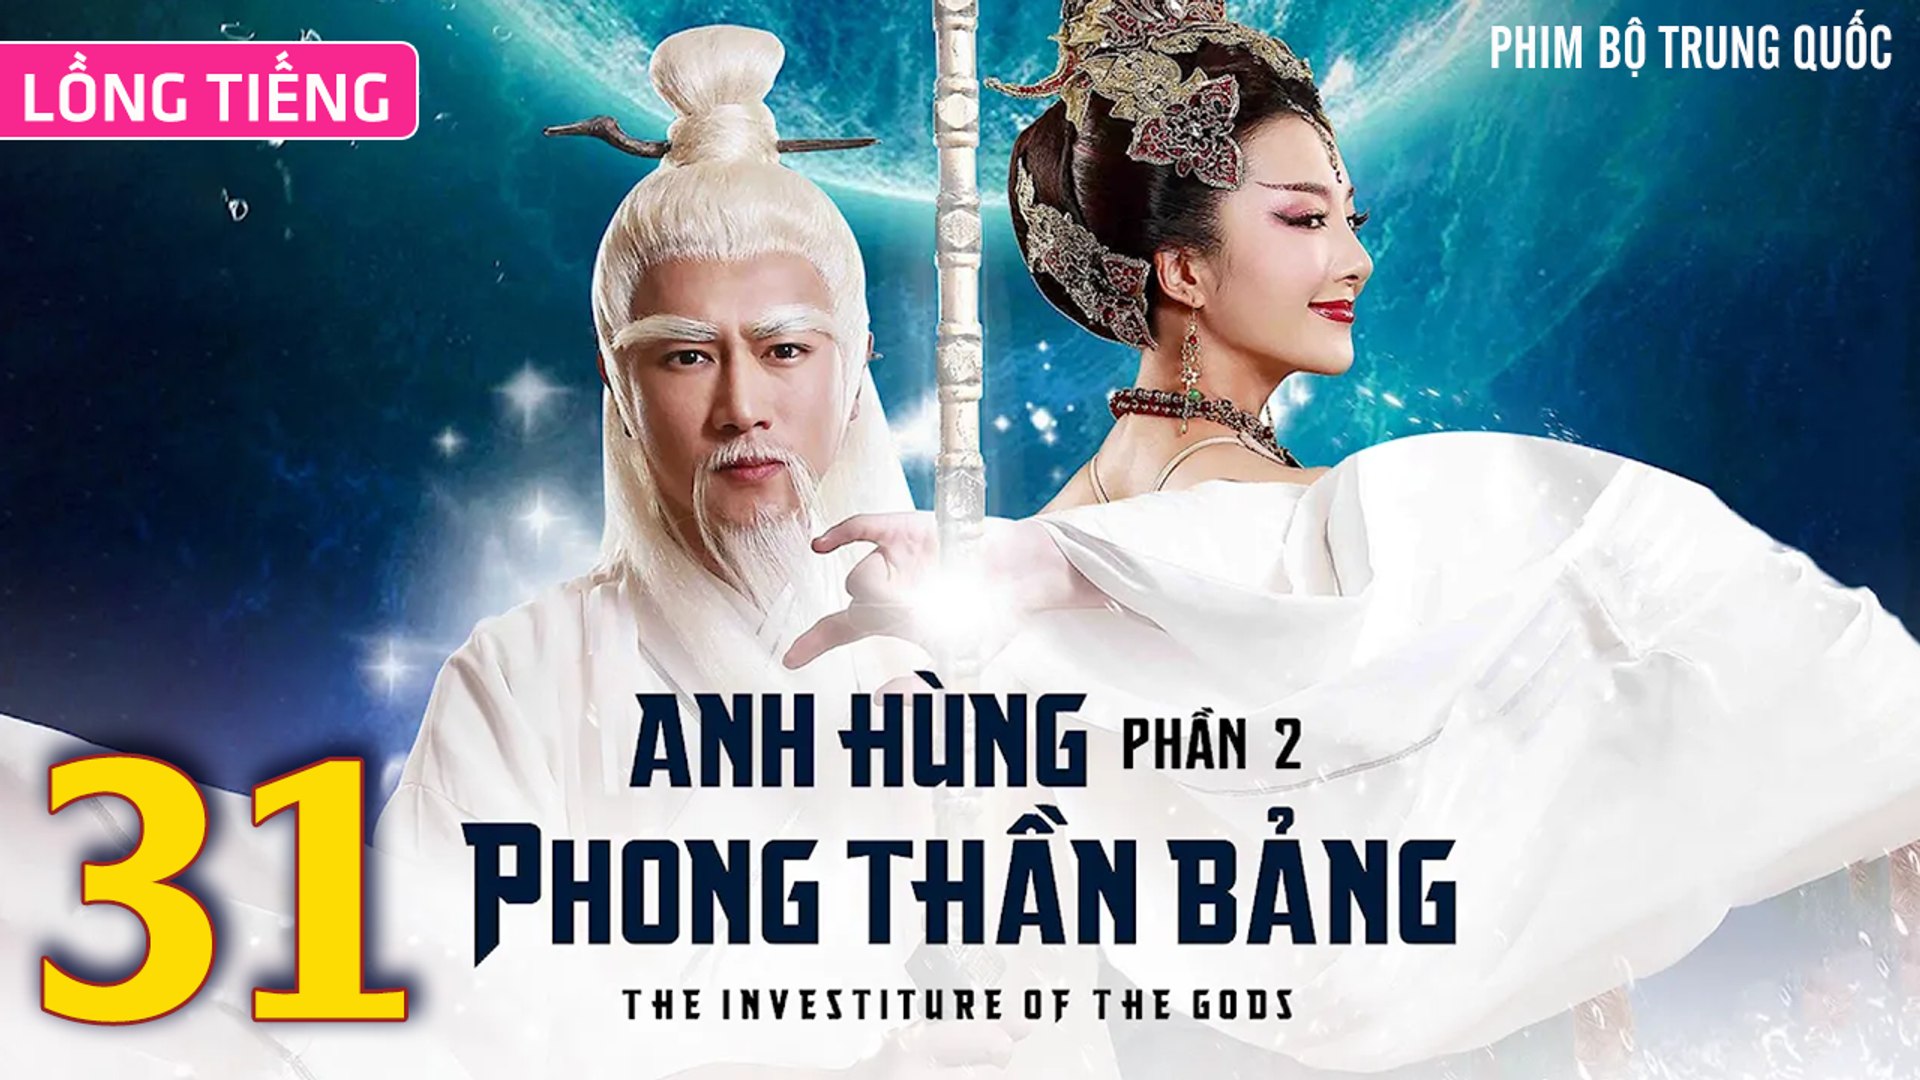 ⁣Phim Bộ Hay: ANH HÙNG PHONG THẦN BẢNG 2 - Tập 31 (Lồng Tiếng) | Phim Bộ Trung Quốc Hay Nhất 2023